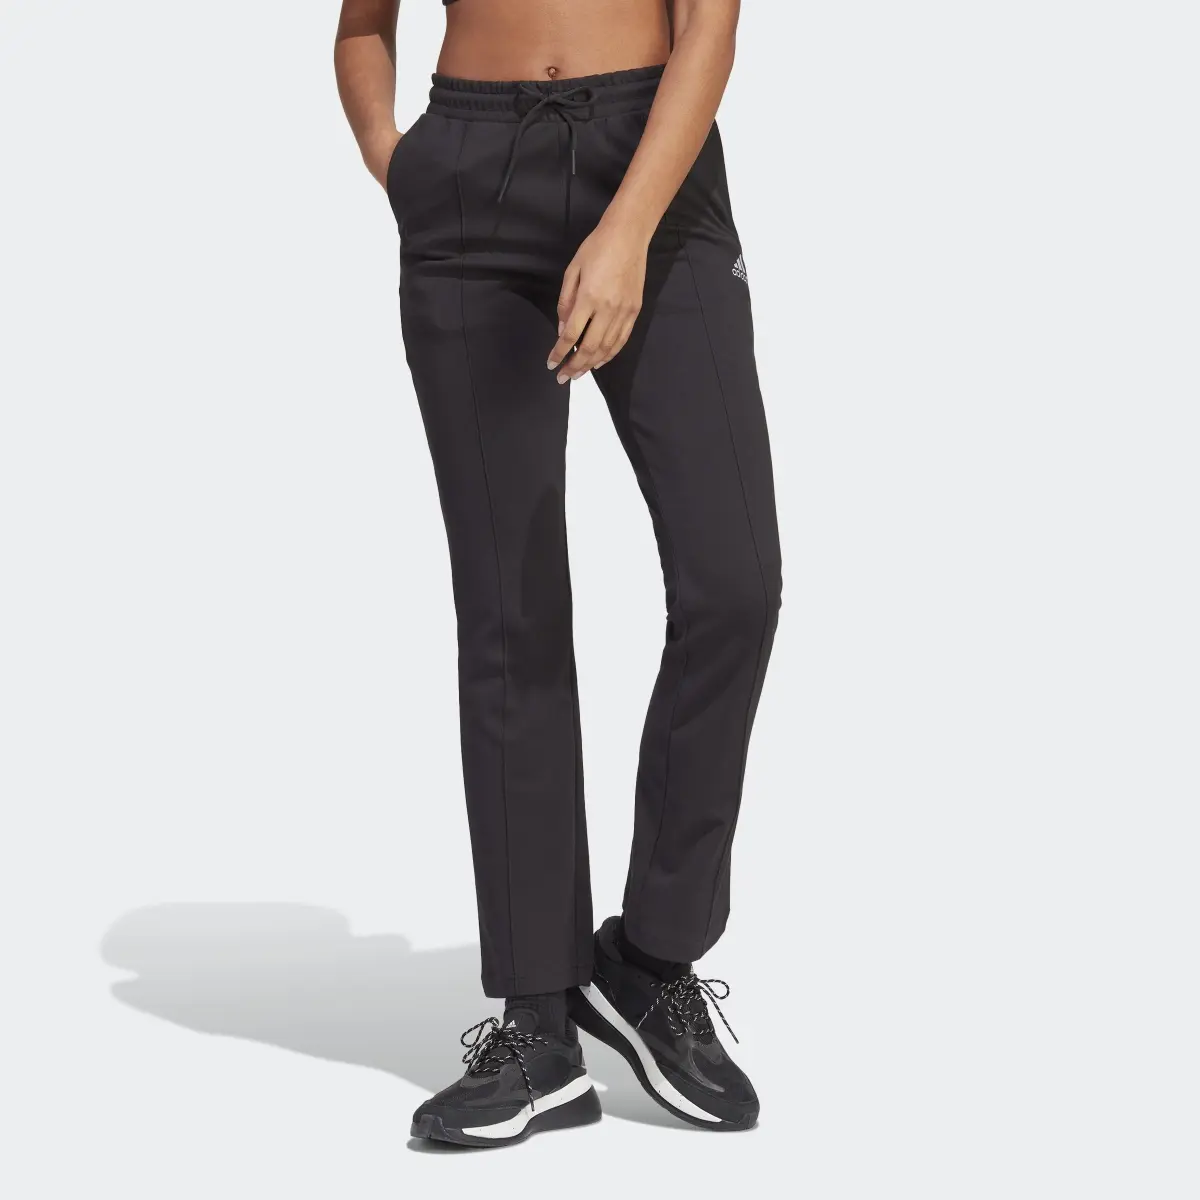 Adidas Pantalon taille haute avec jambes évasées et imprimé adidas intégral. 1